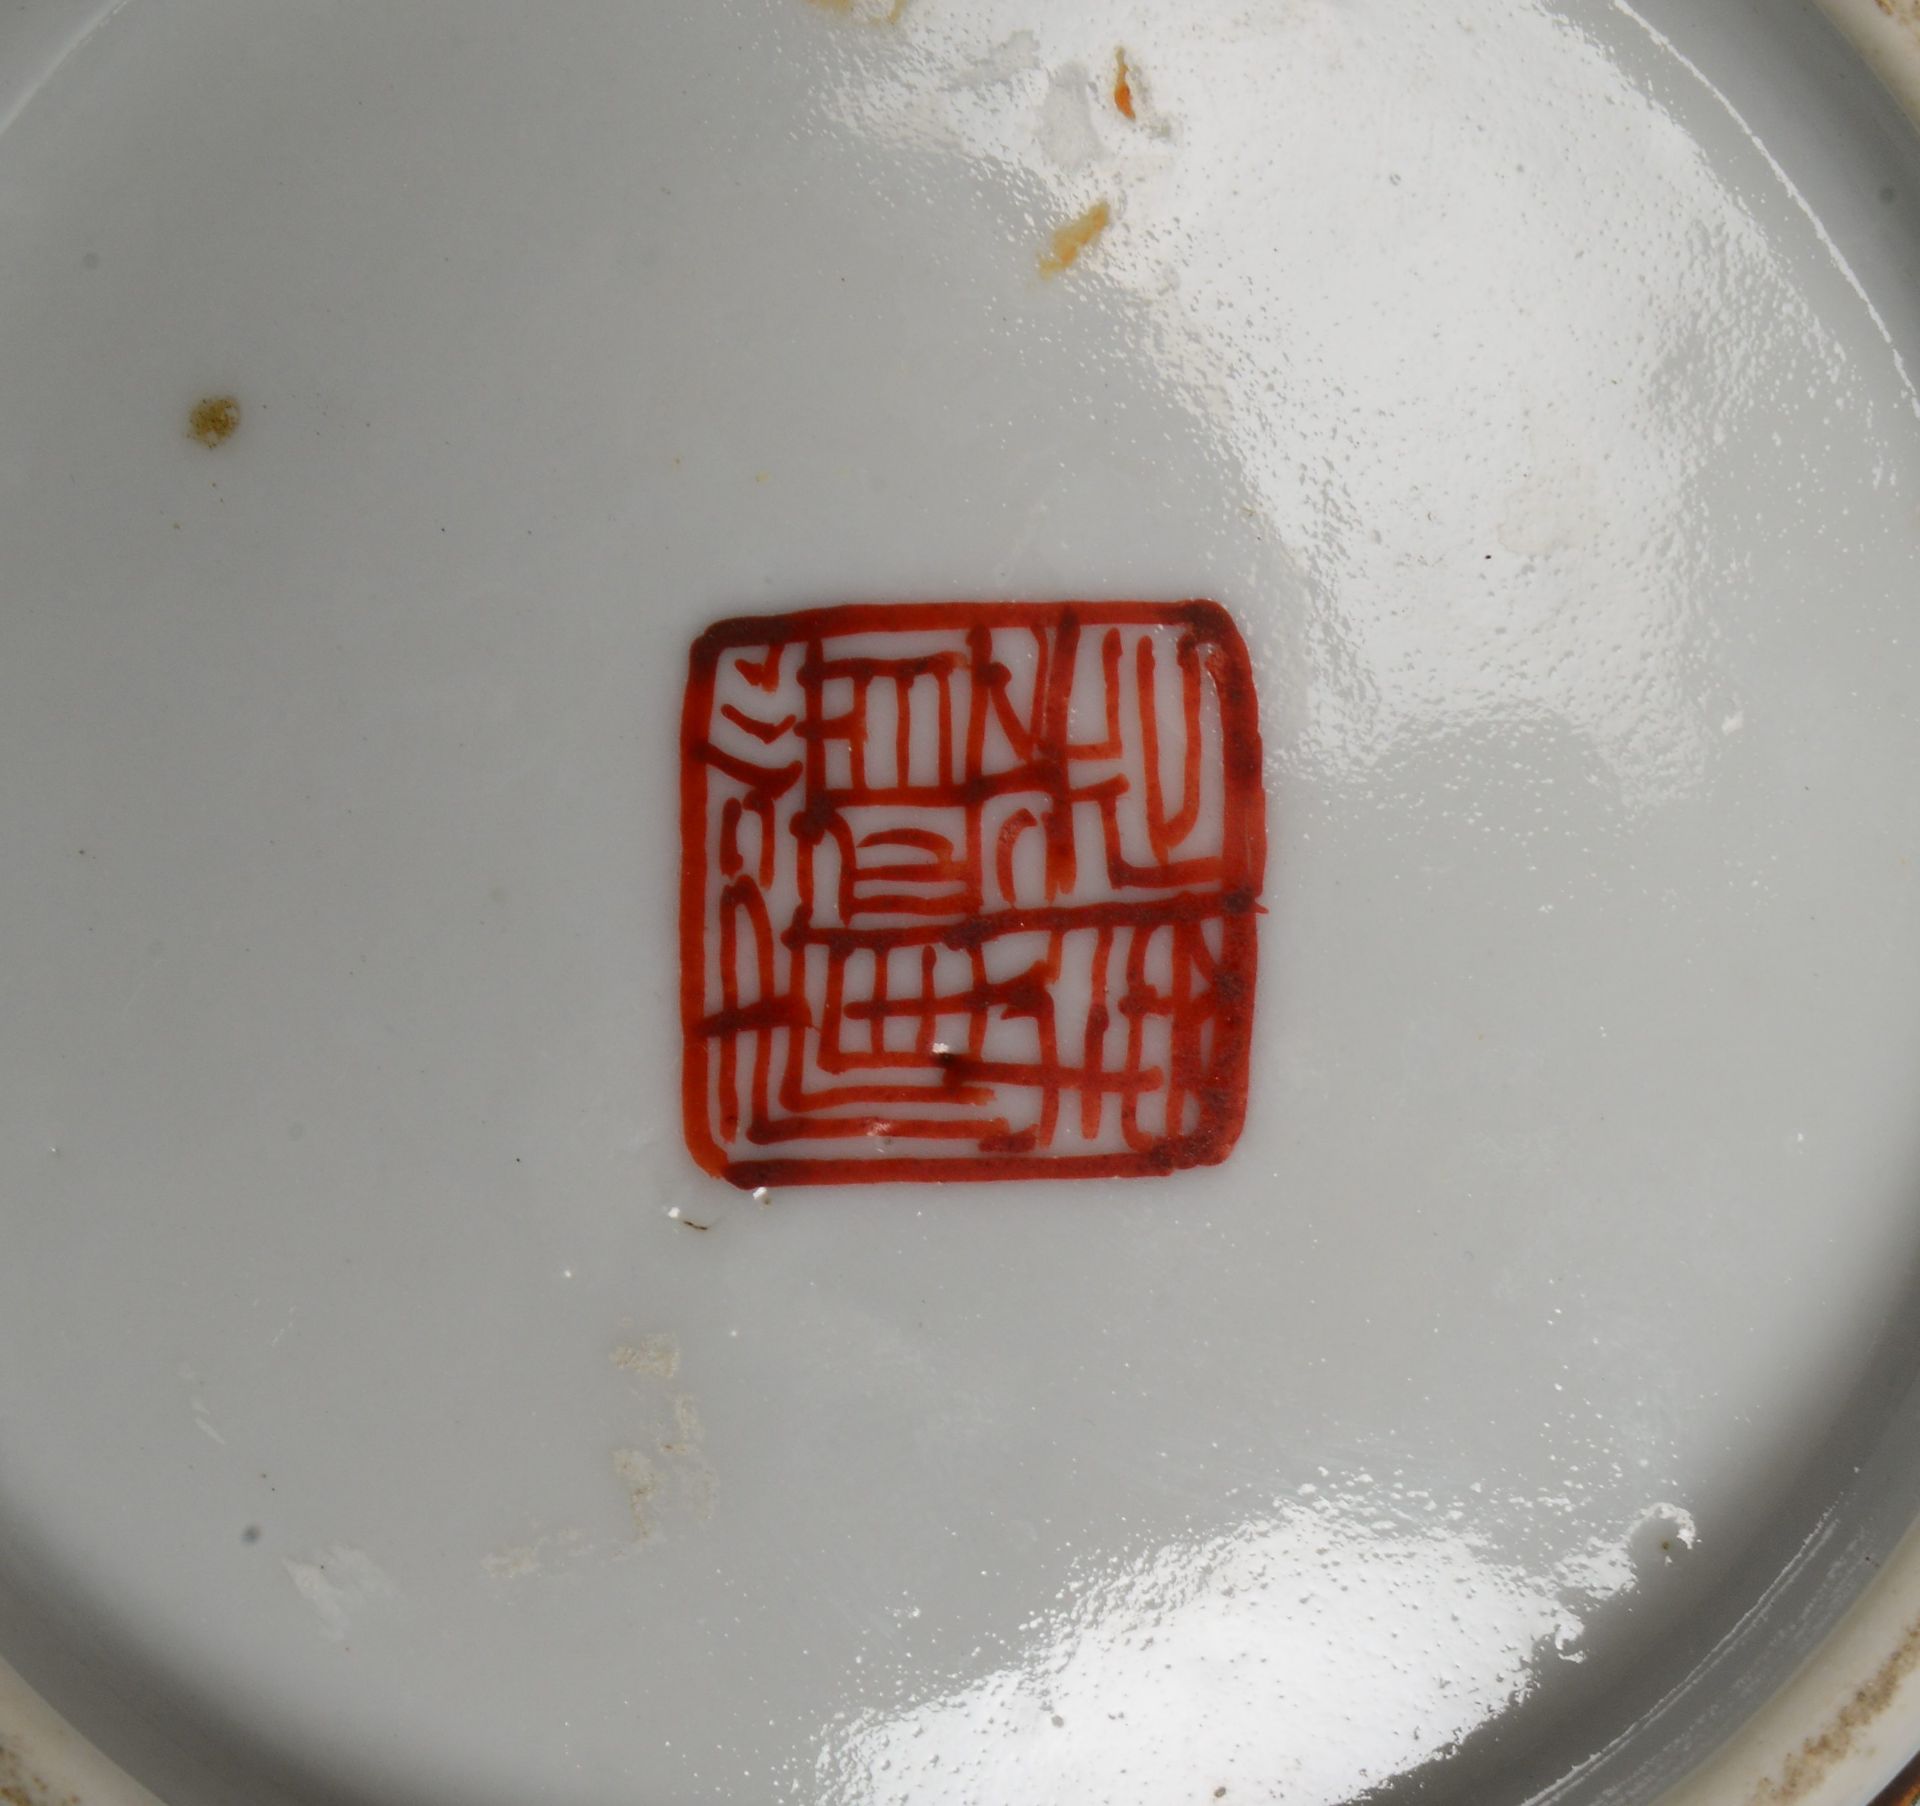 Schale (China), antik, im Boden gemarkt; Ø 15 cm (mit Haarriss/Bestoßung) - Bild 3 aus 3